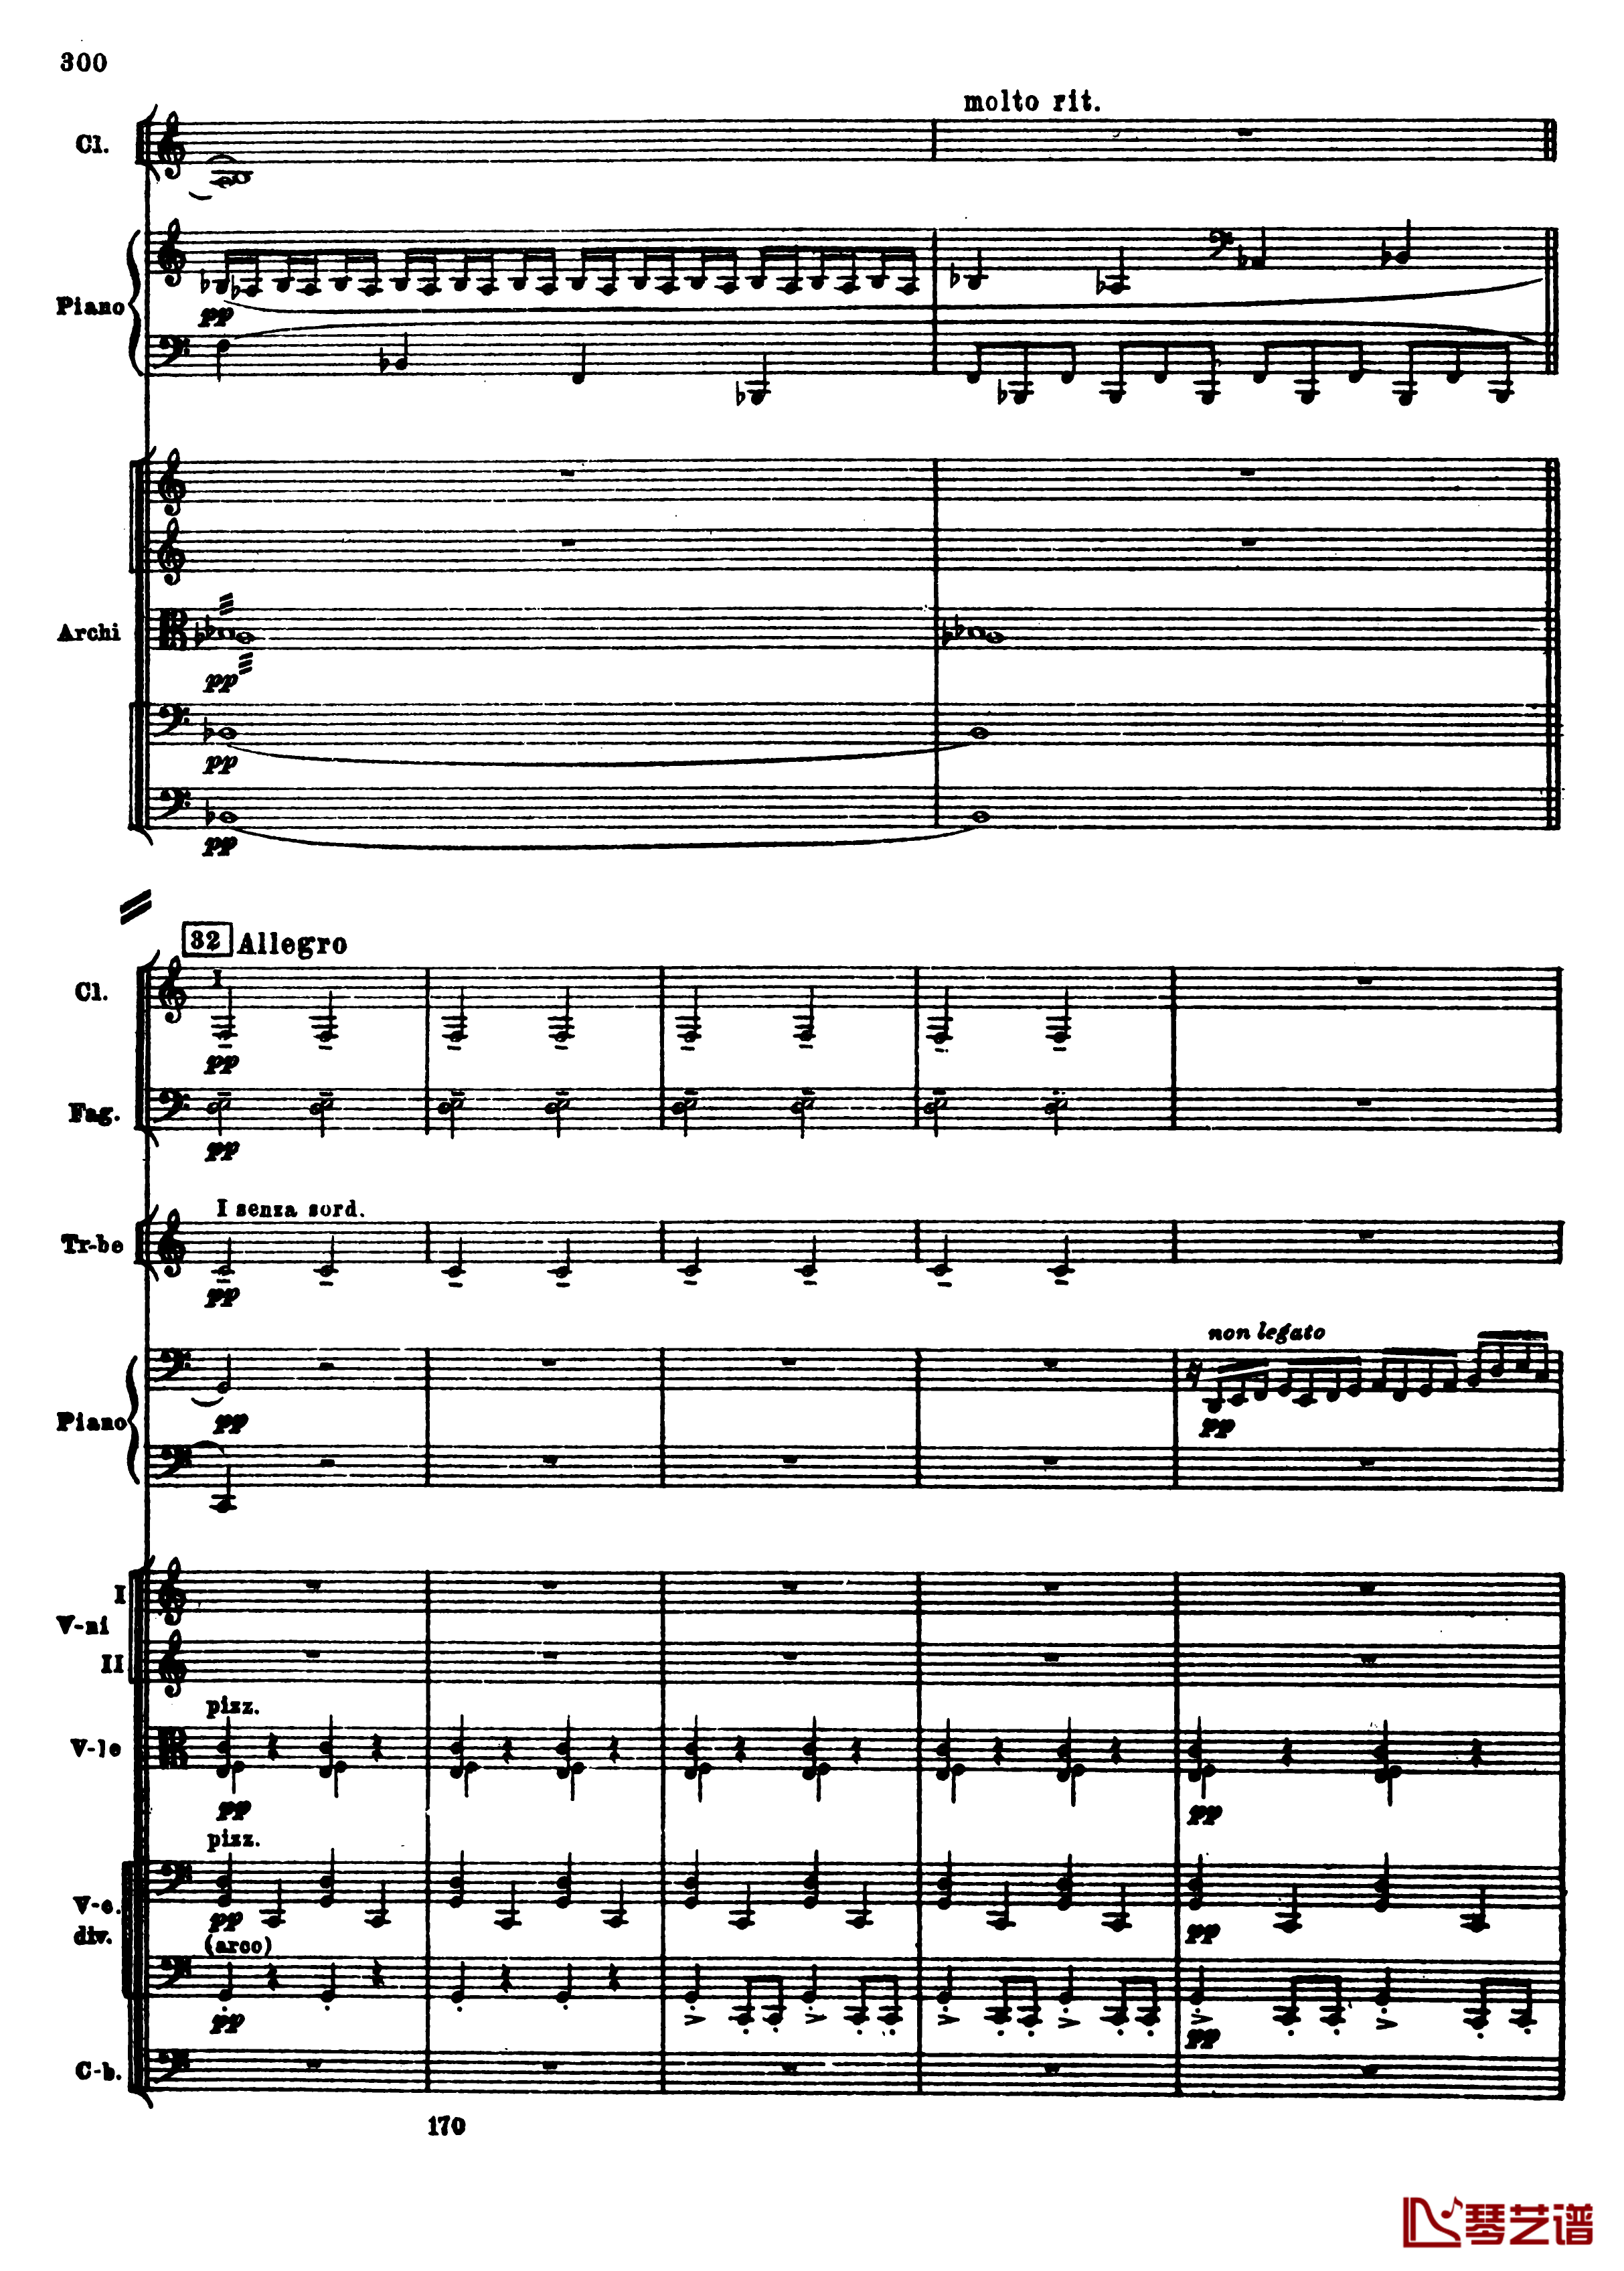 普罗科菲耶夫第三钢琴协奏曲钢琴谱-总谱-普罗科非耶夫32